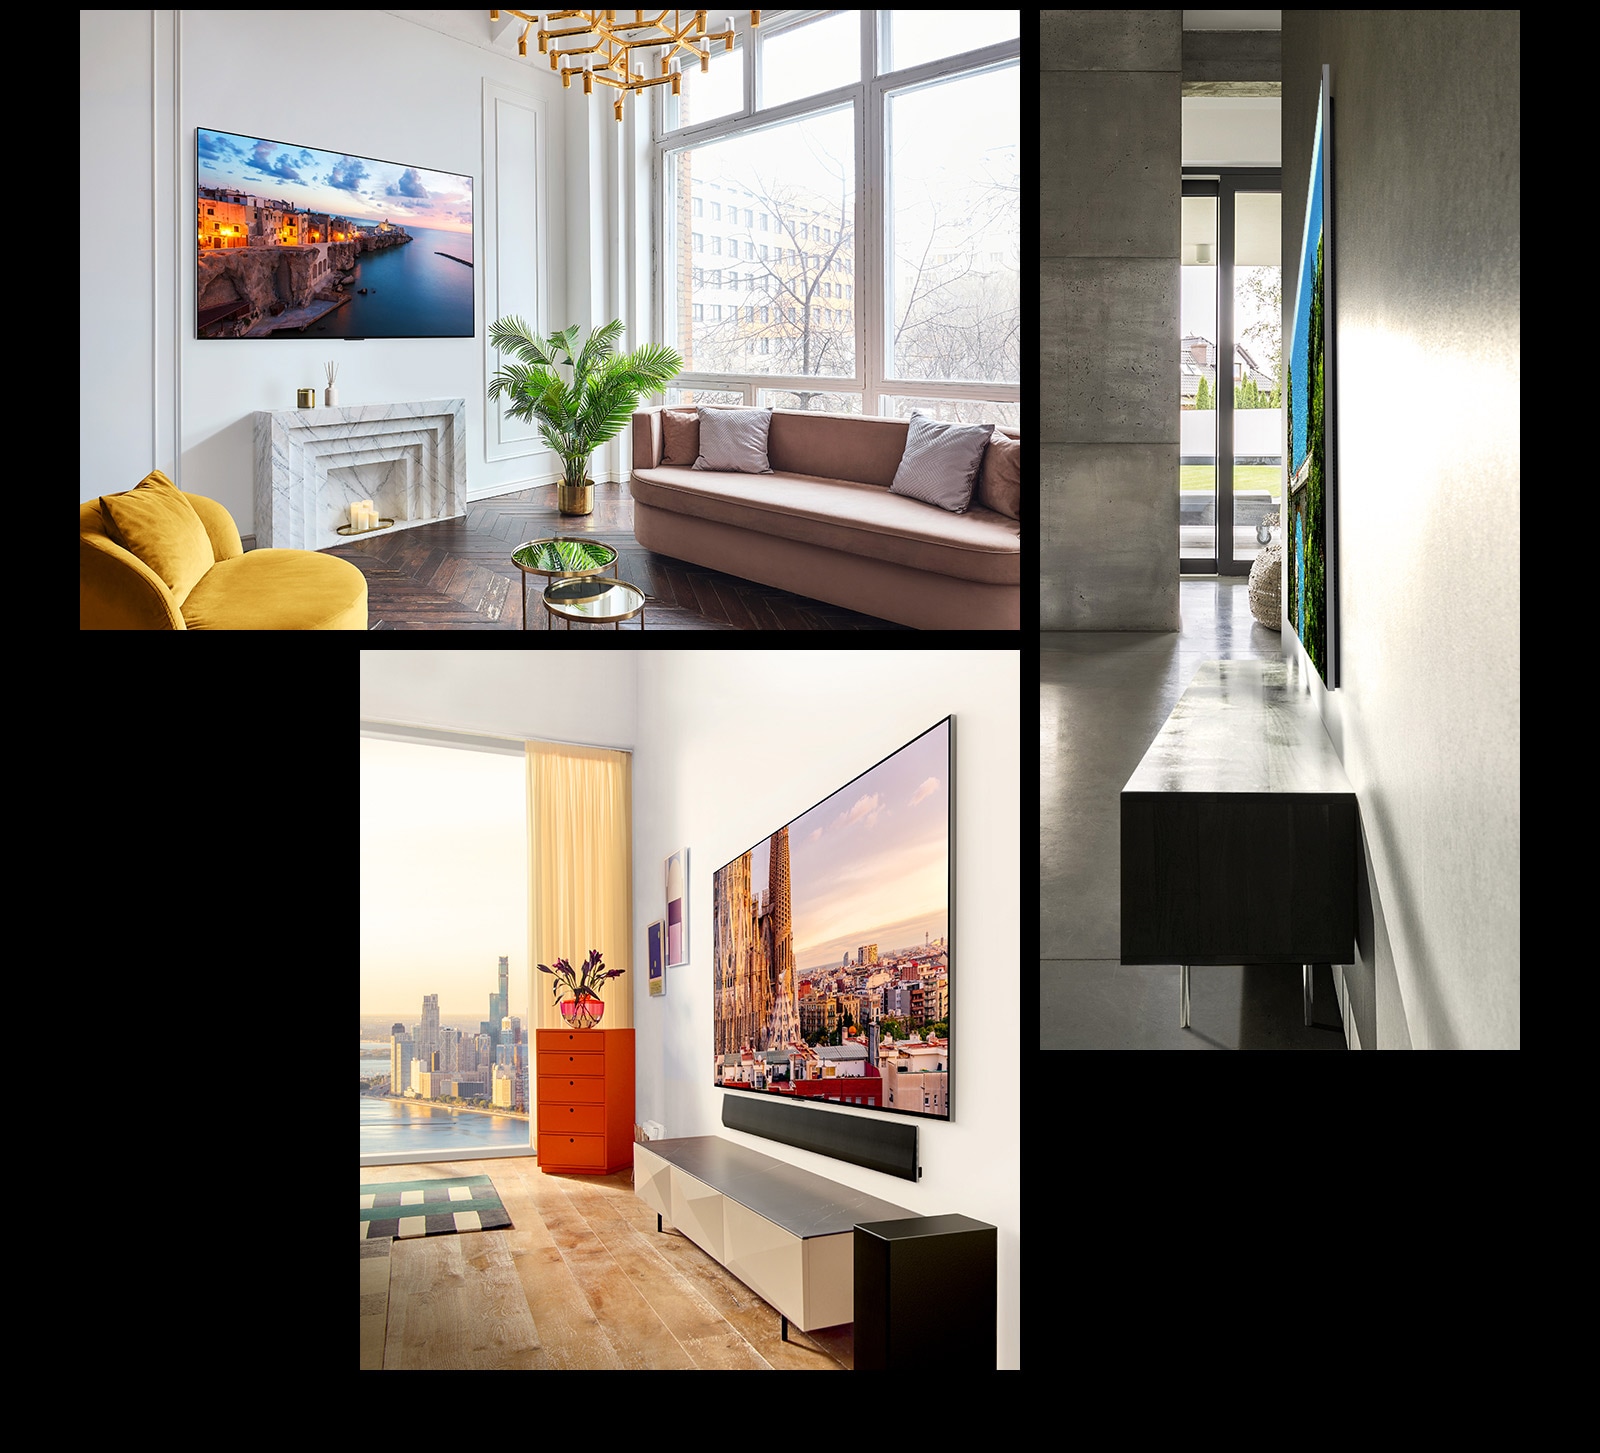 תמונה של LG OLED G3 תלויה על קיר בחדר מעוצב מציגה את העיצוב האחיד עם הקיר. מבט צד של העיצוב הדק להפליא של LG OLED G3. תמונה זוויתית של LG OLED G3 תלויה על קיר בדירה עם נוף עירוני ומתחתיה ניצב סאונד-בר.